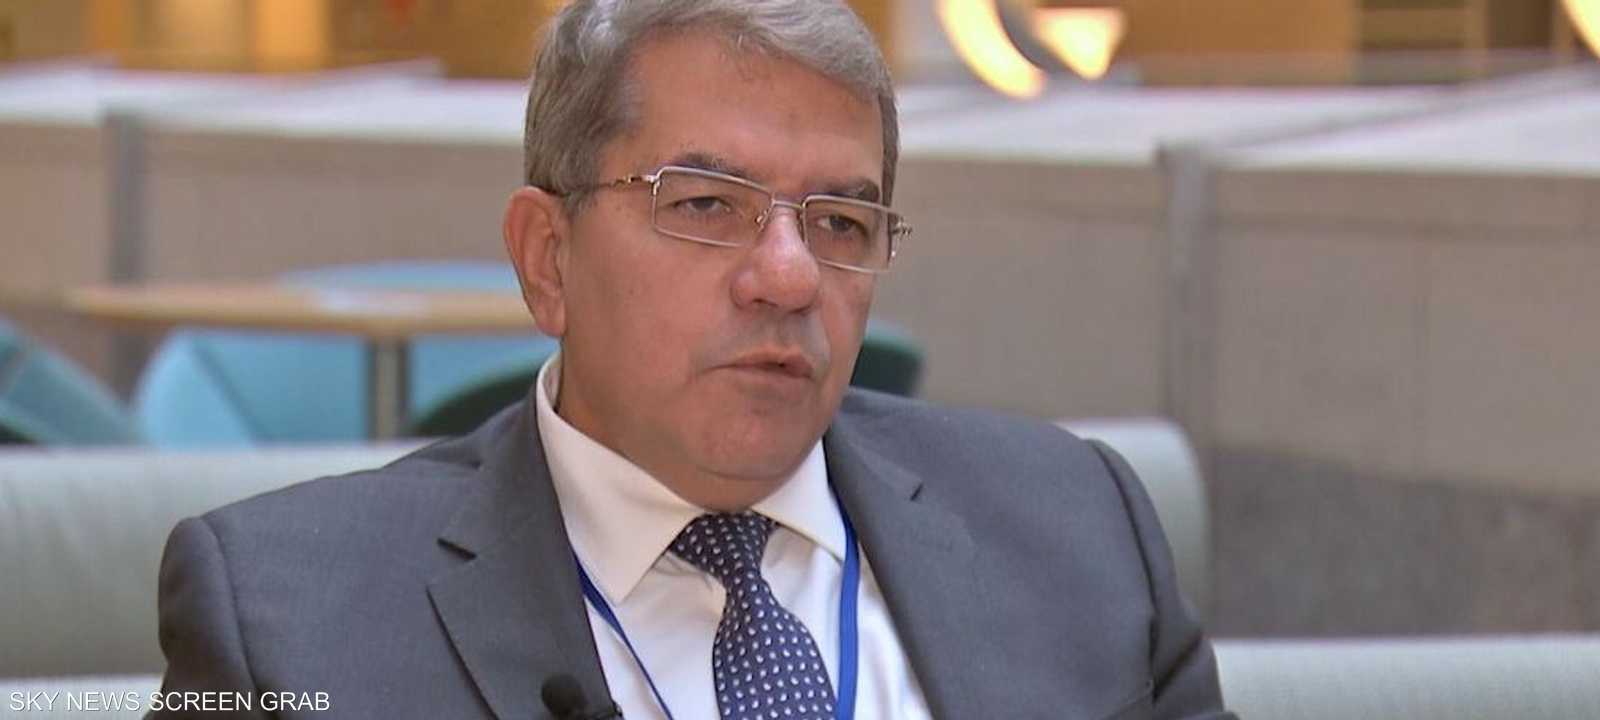 وزير المالية المصري عمرو الجارحي (أرشيف)